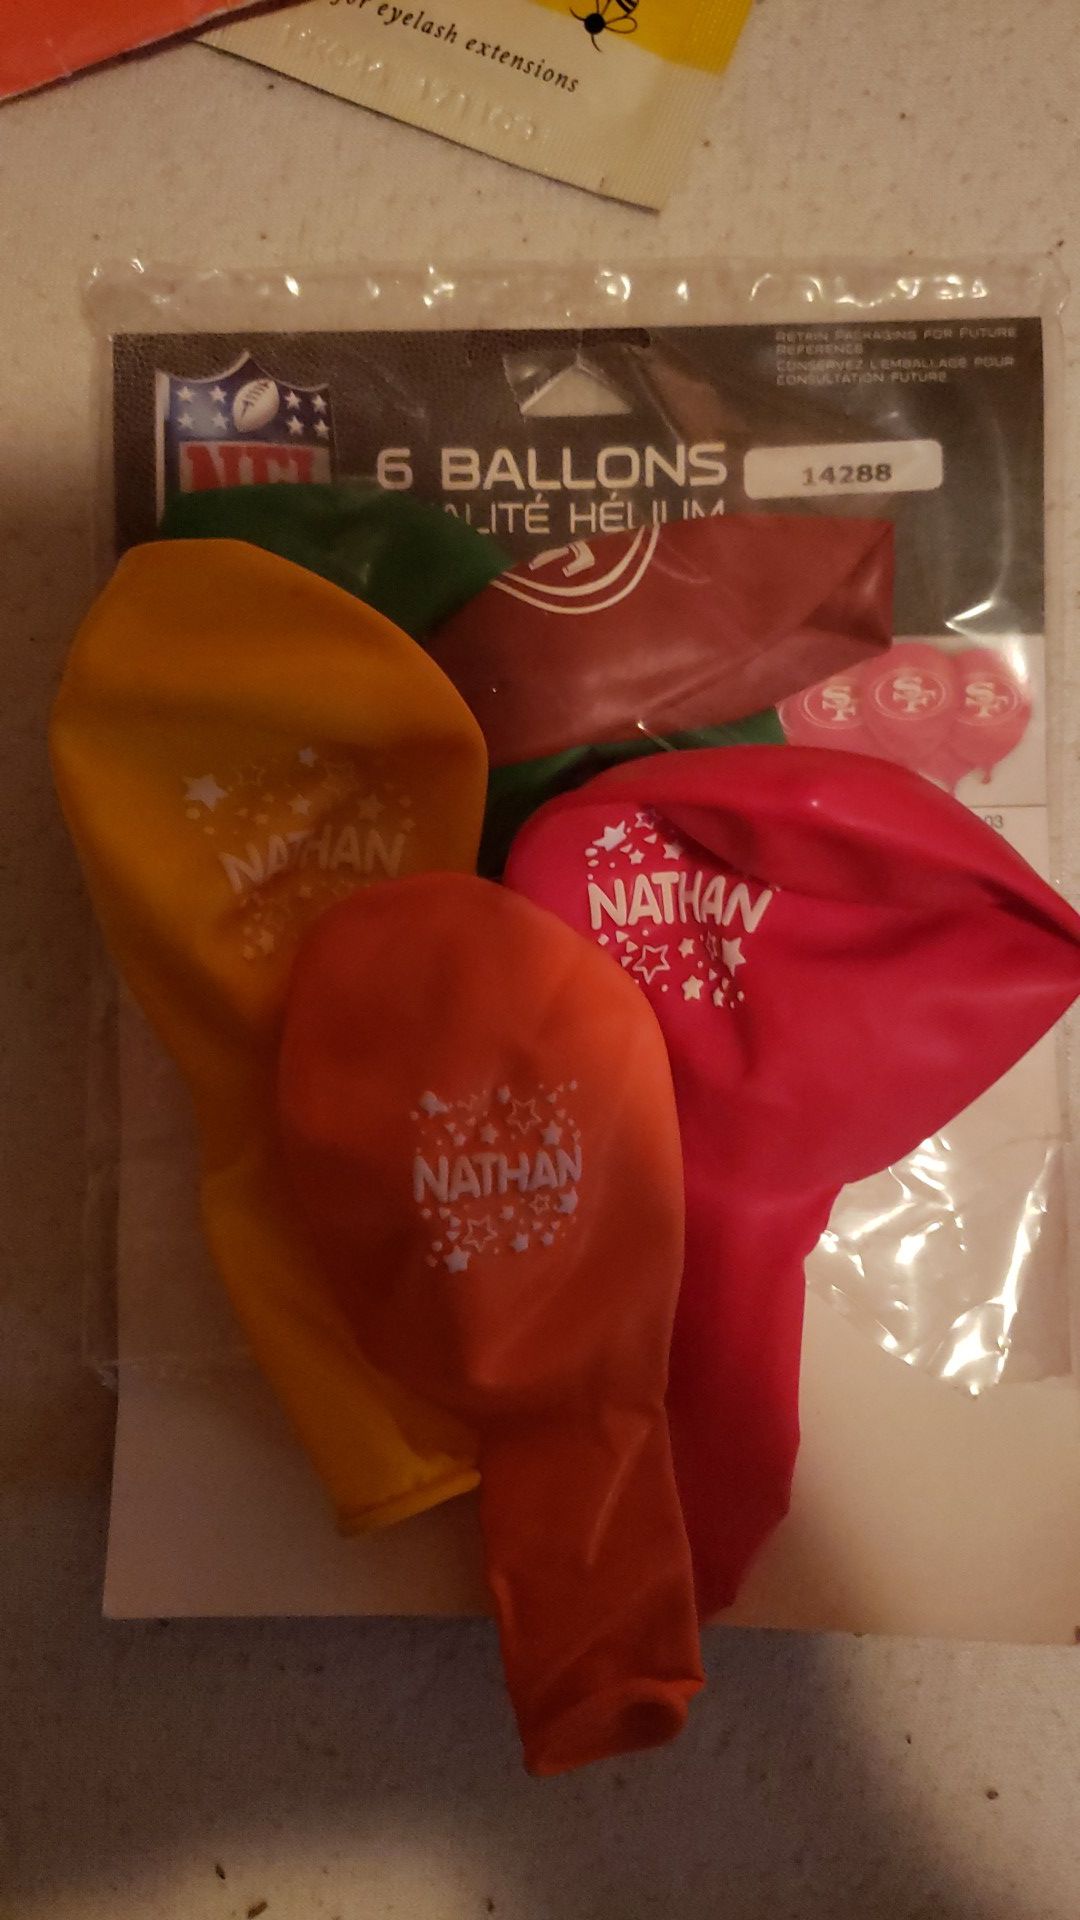 Nathan name balloons